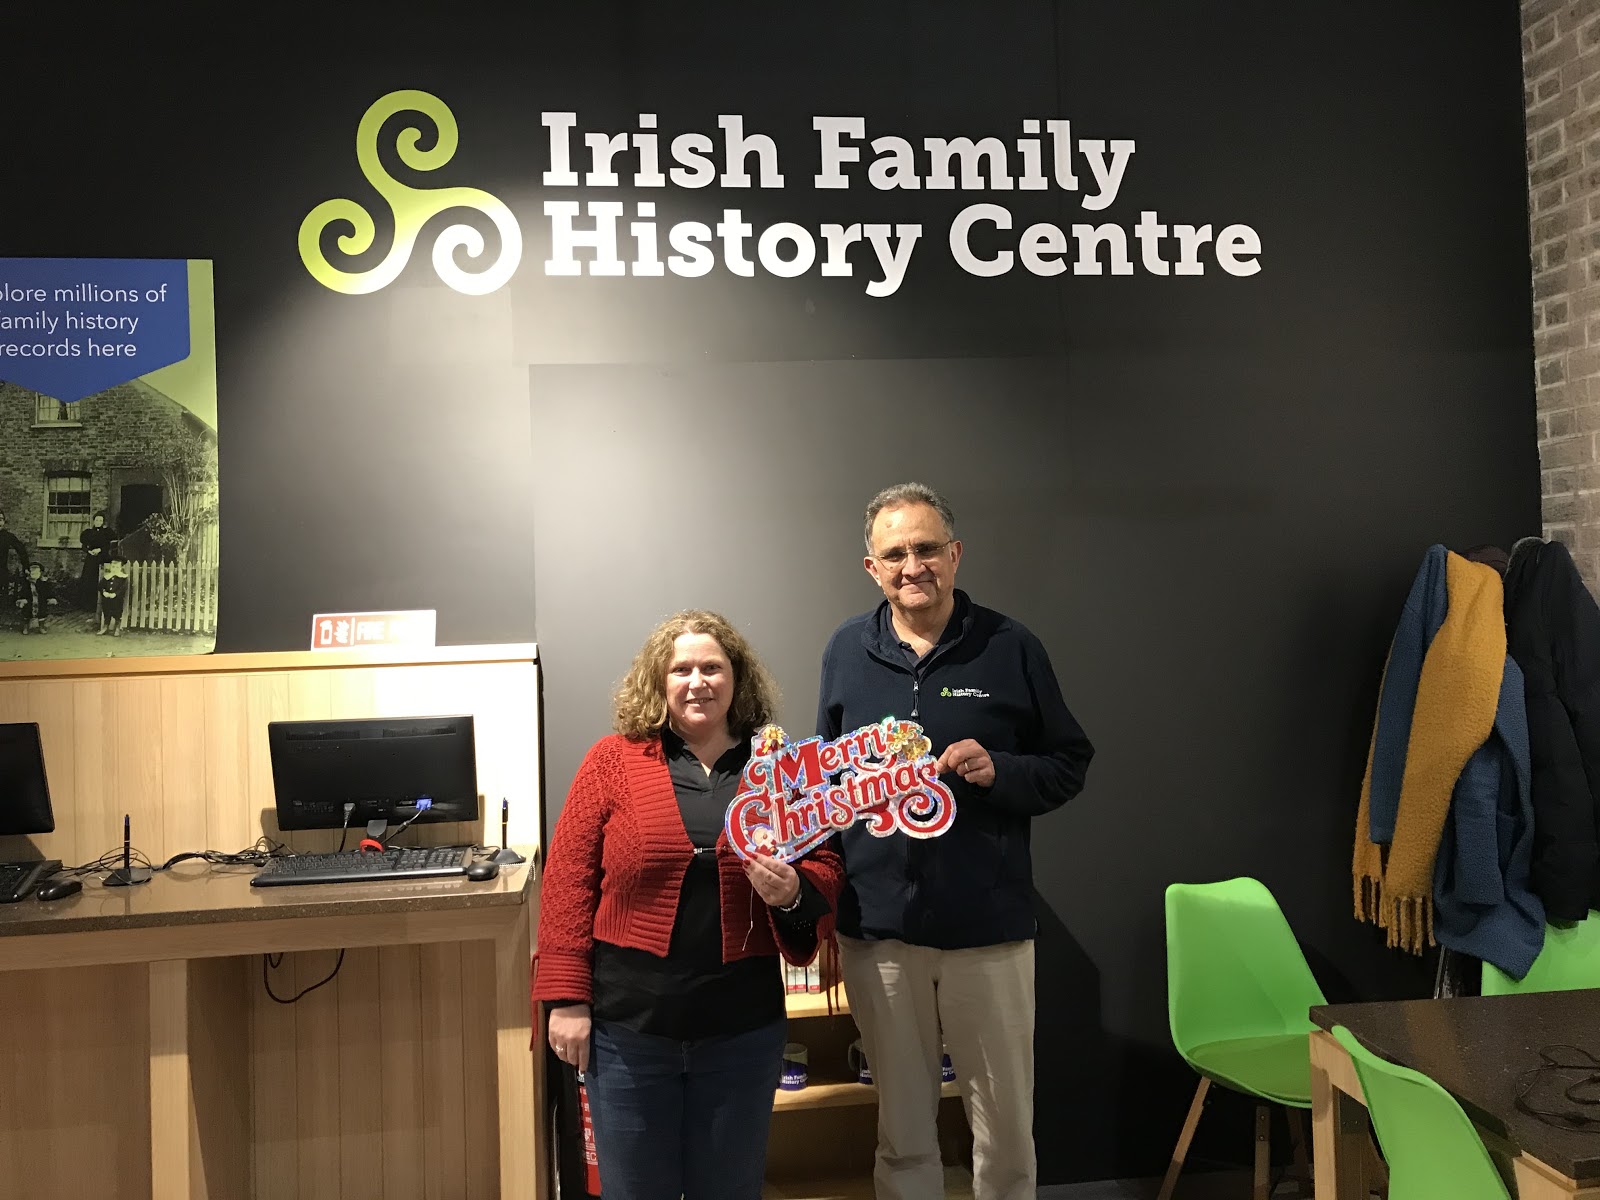 Happy Christmas from the Irish Family History Centre